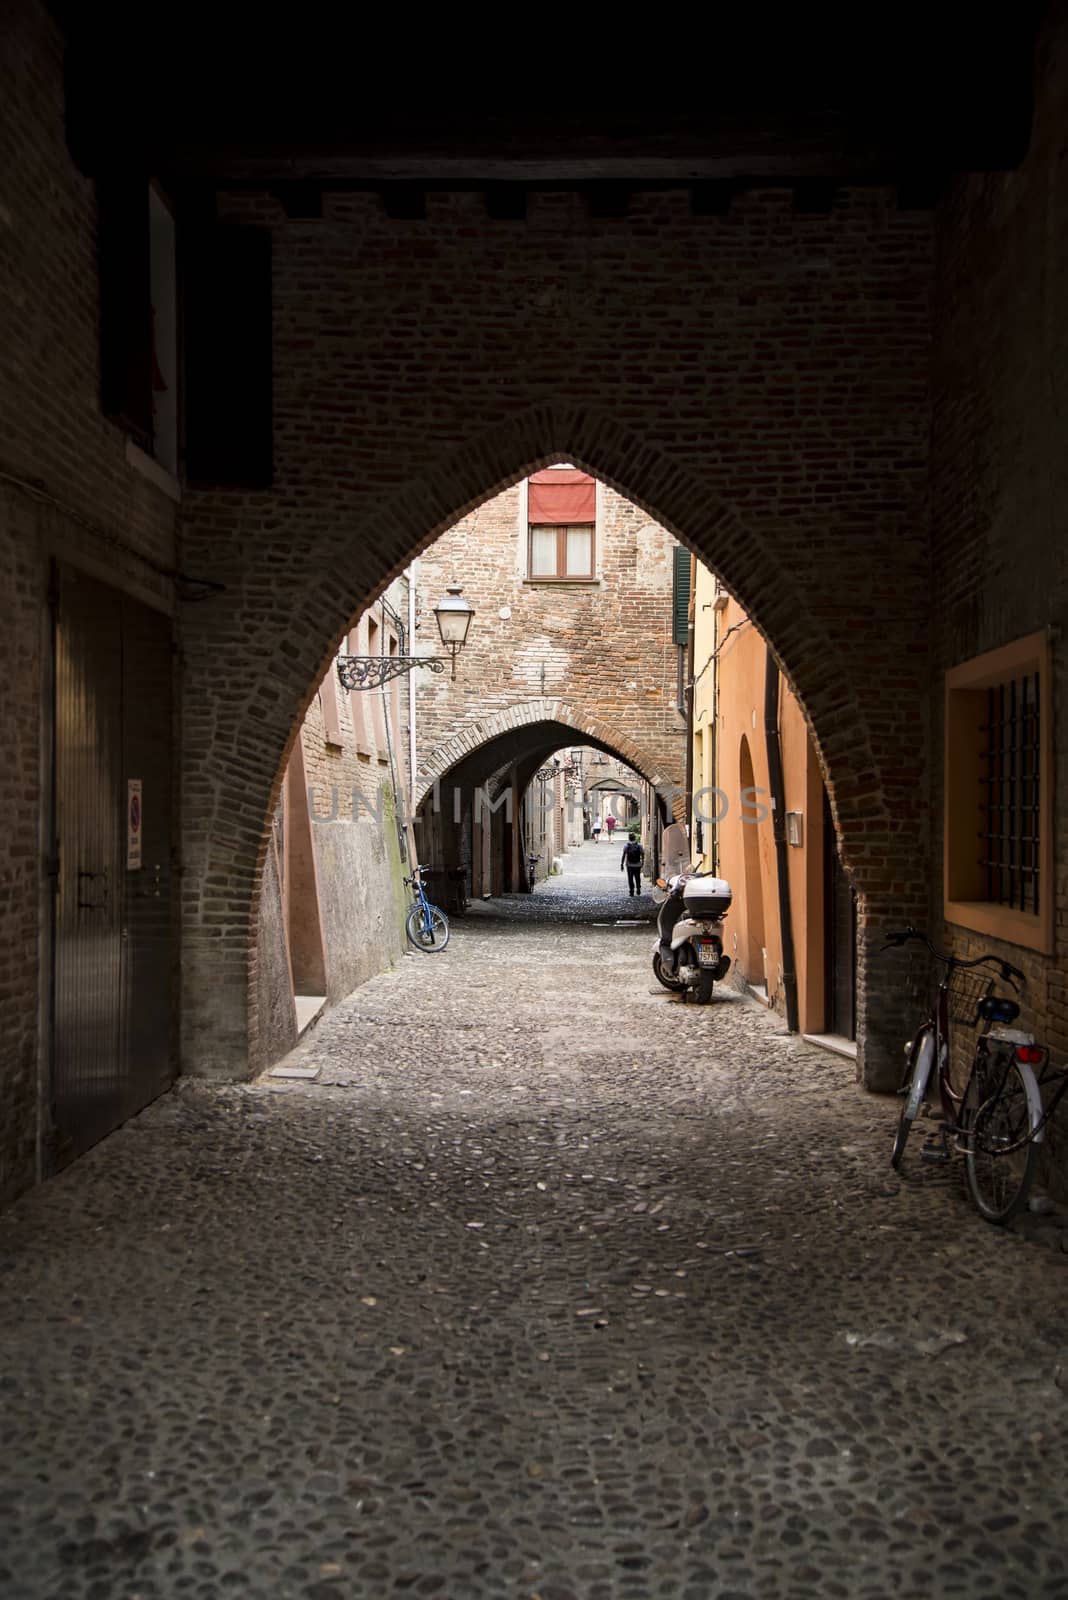 Via delle Volte in Ferrara by edella